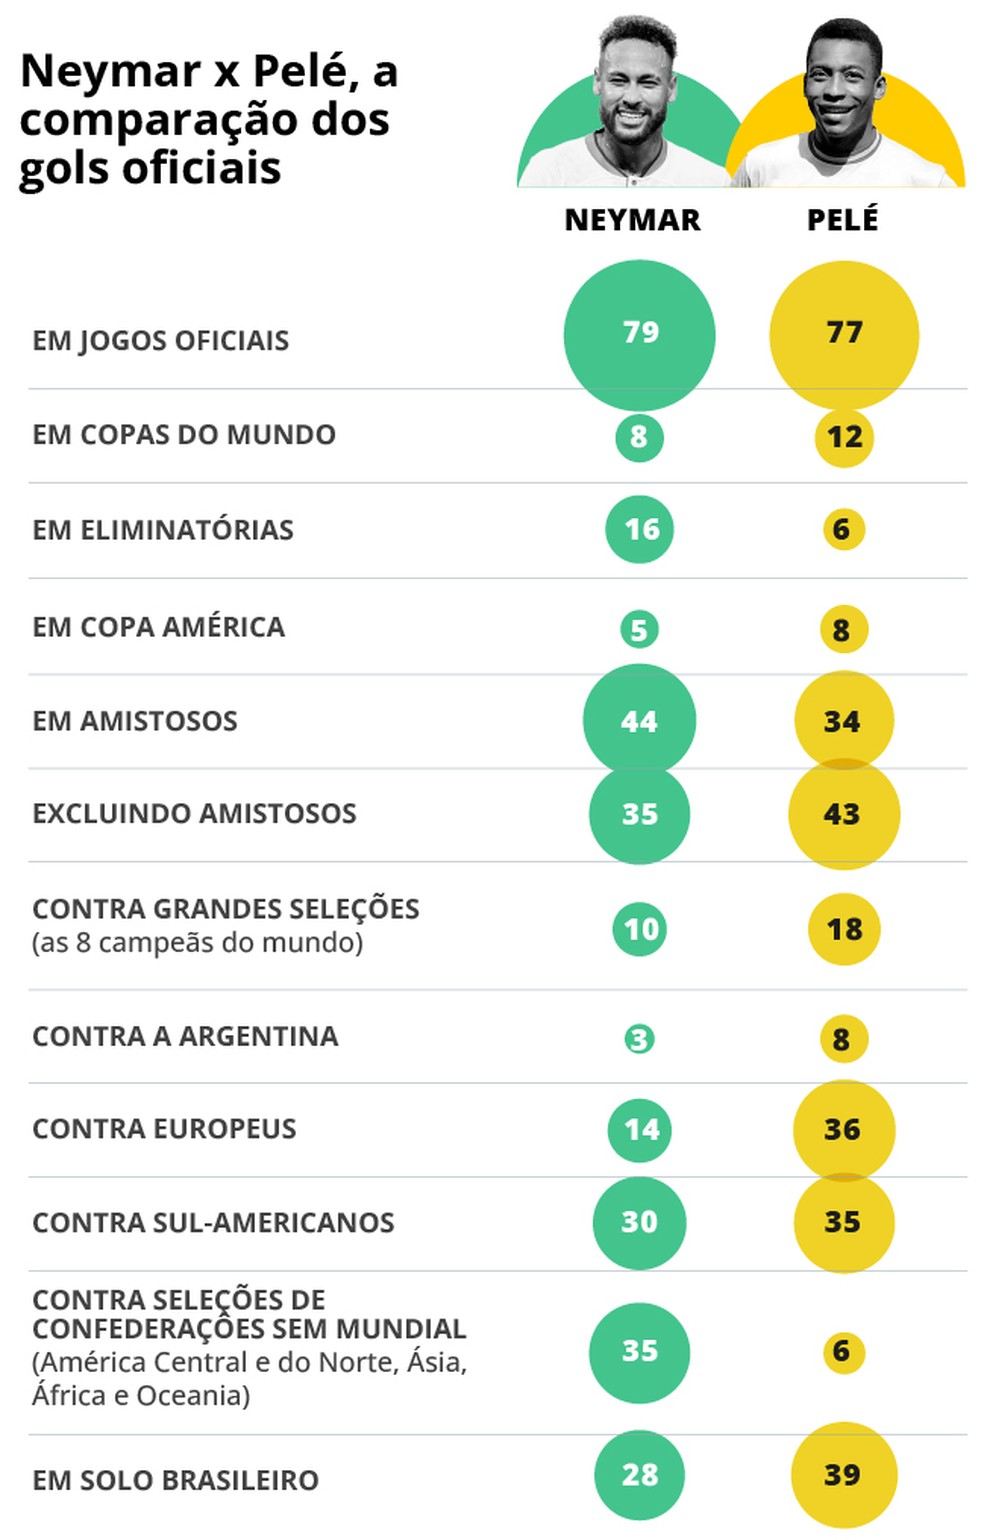 Neymar: Quanto vale, qual posição atua, quantos gols já fez e mais dúvidas  - Esporte - UOL Esporte